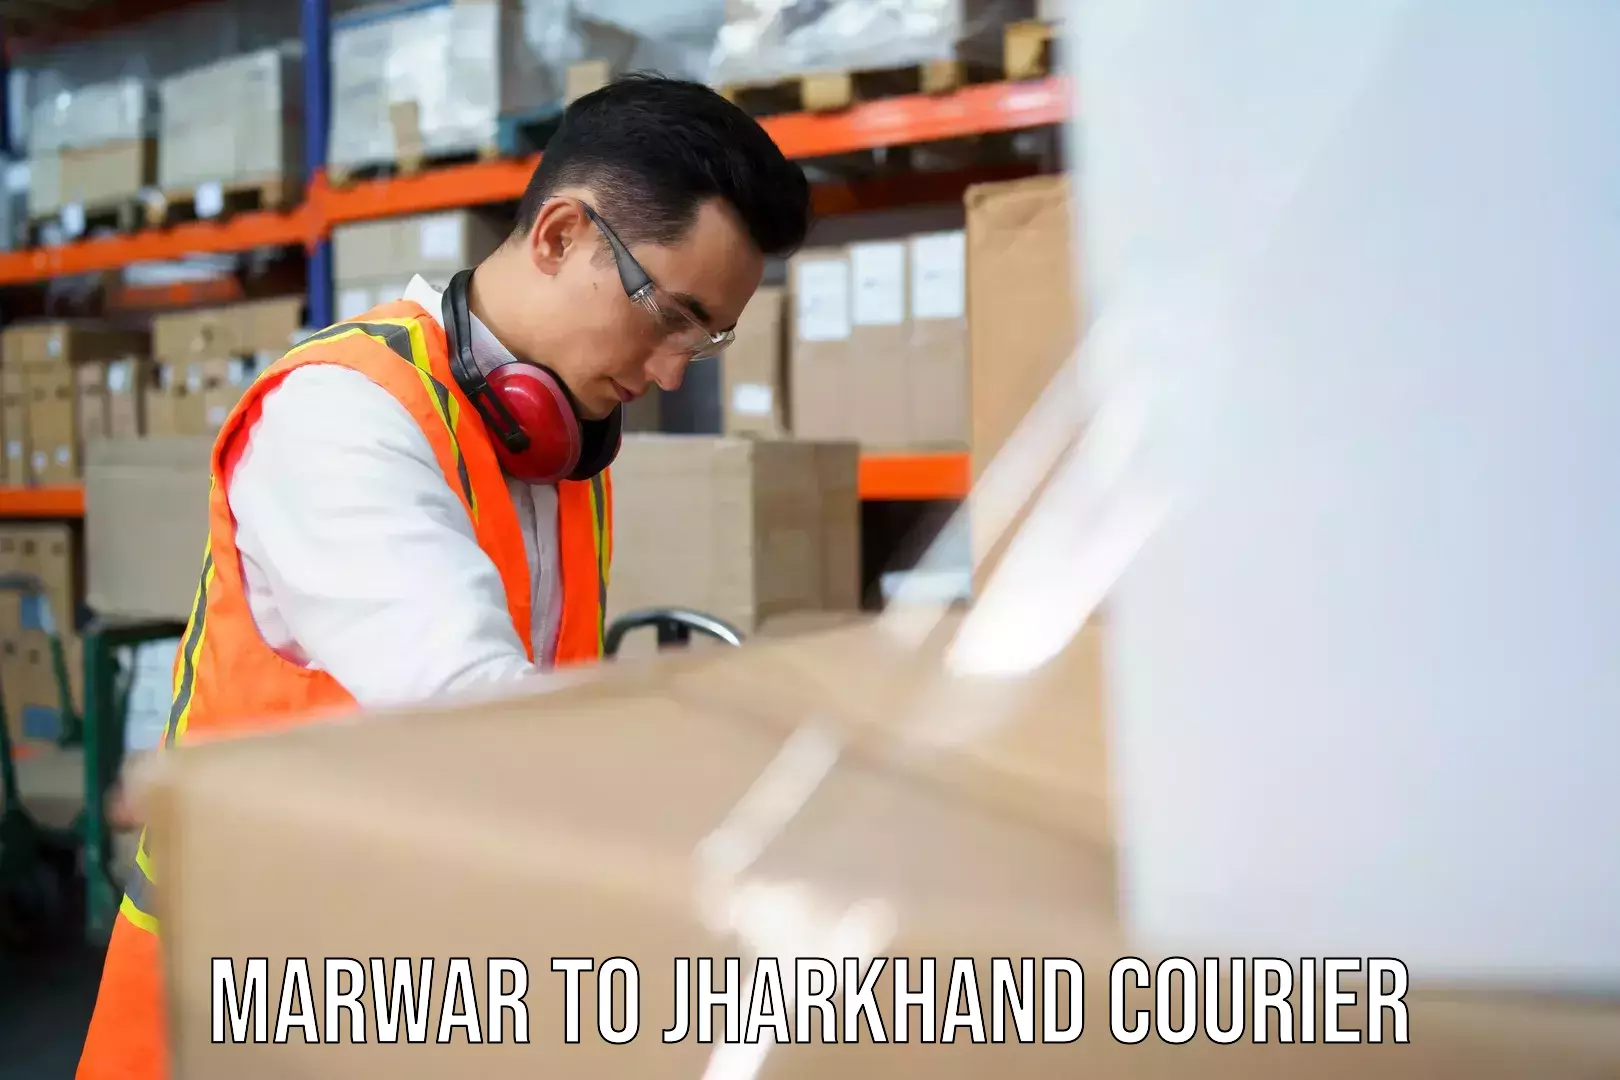 Ocean freight courier Marwar to Jharkhand